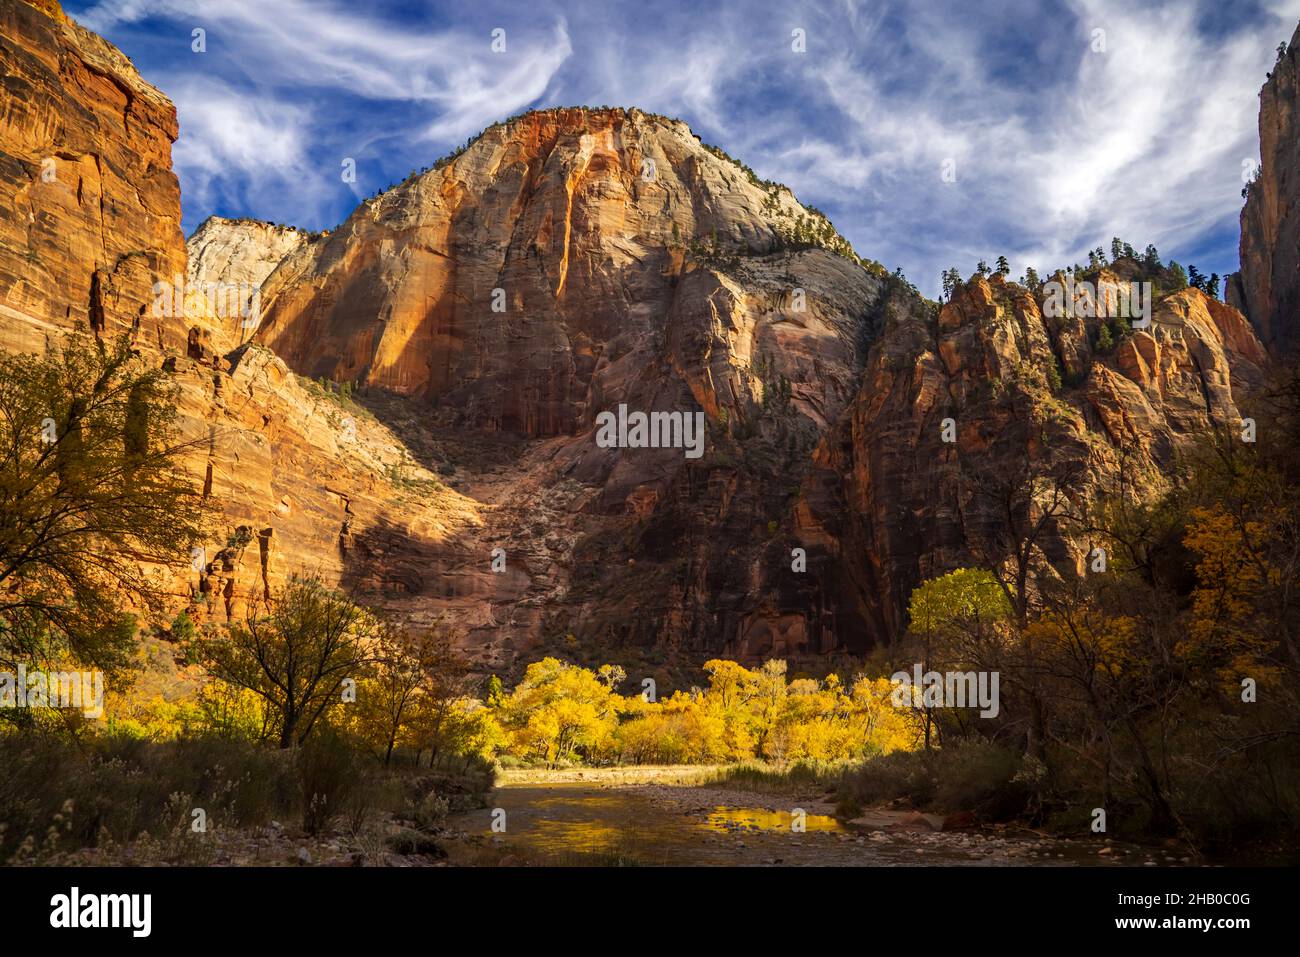 C'est une vue d'automne de Cable Mountain dans la région de Big Bend du parc national de Zion, Springdale, Washington County, Utah, USA. Banque D'Images